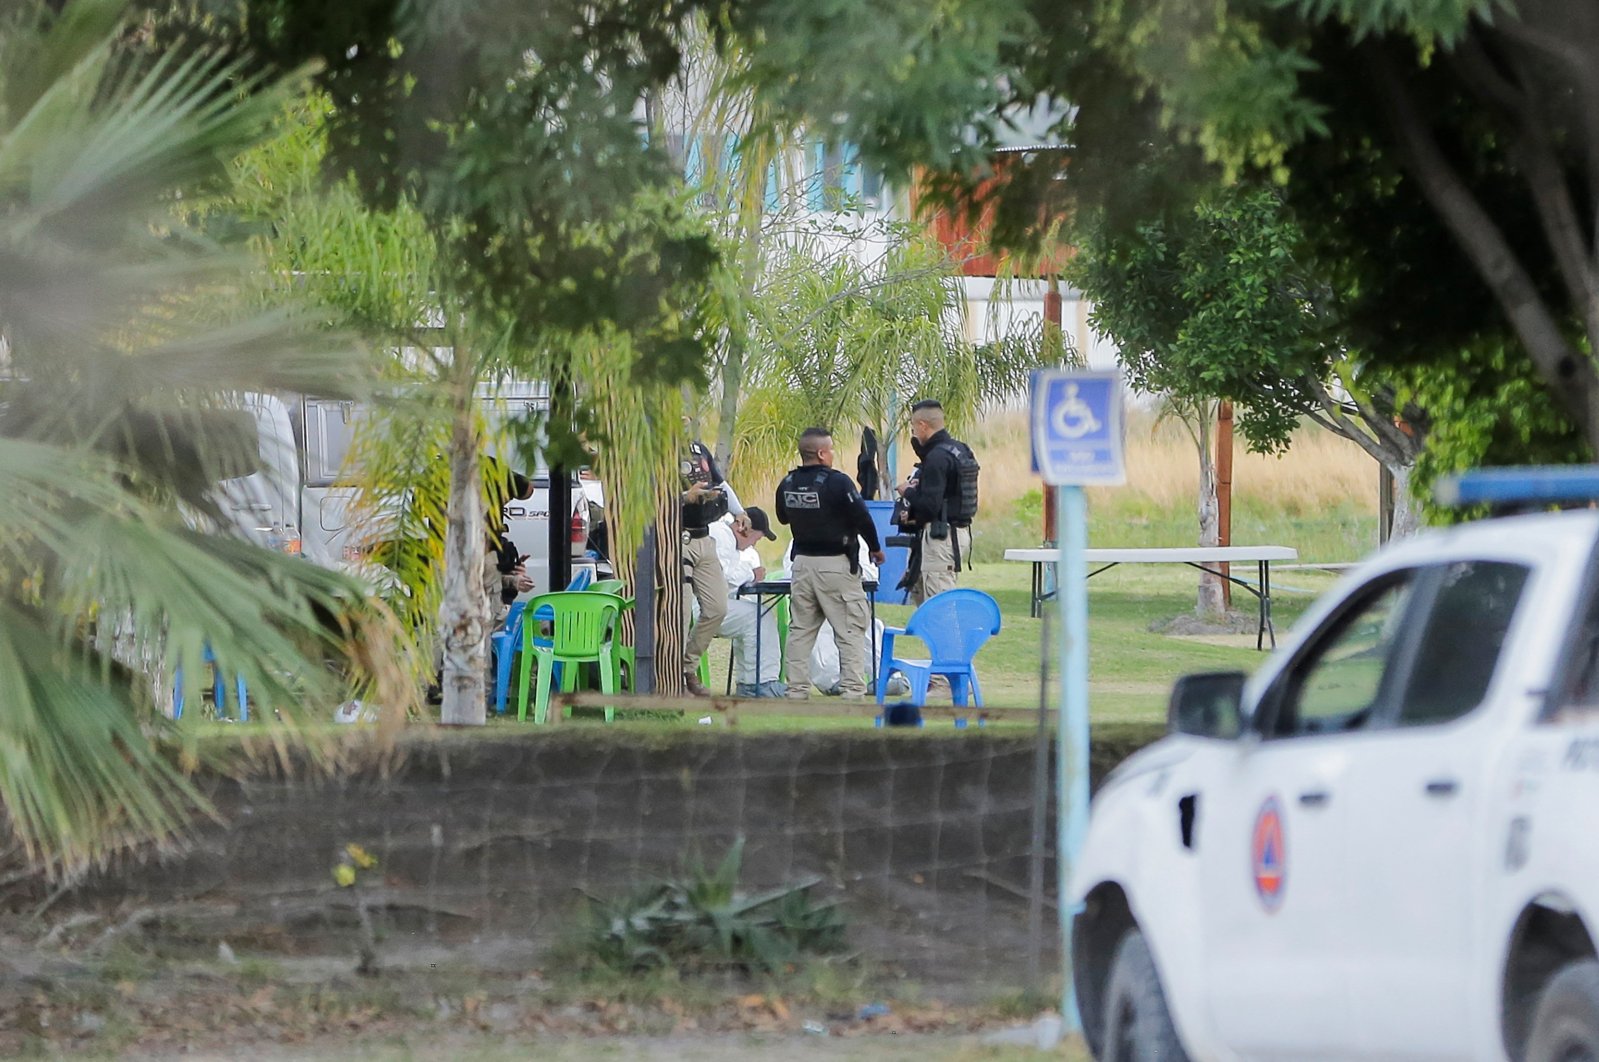 Anak di antara 7 tewas saat pria bersenjata menembak resor Meksiko tengah